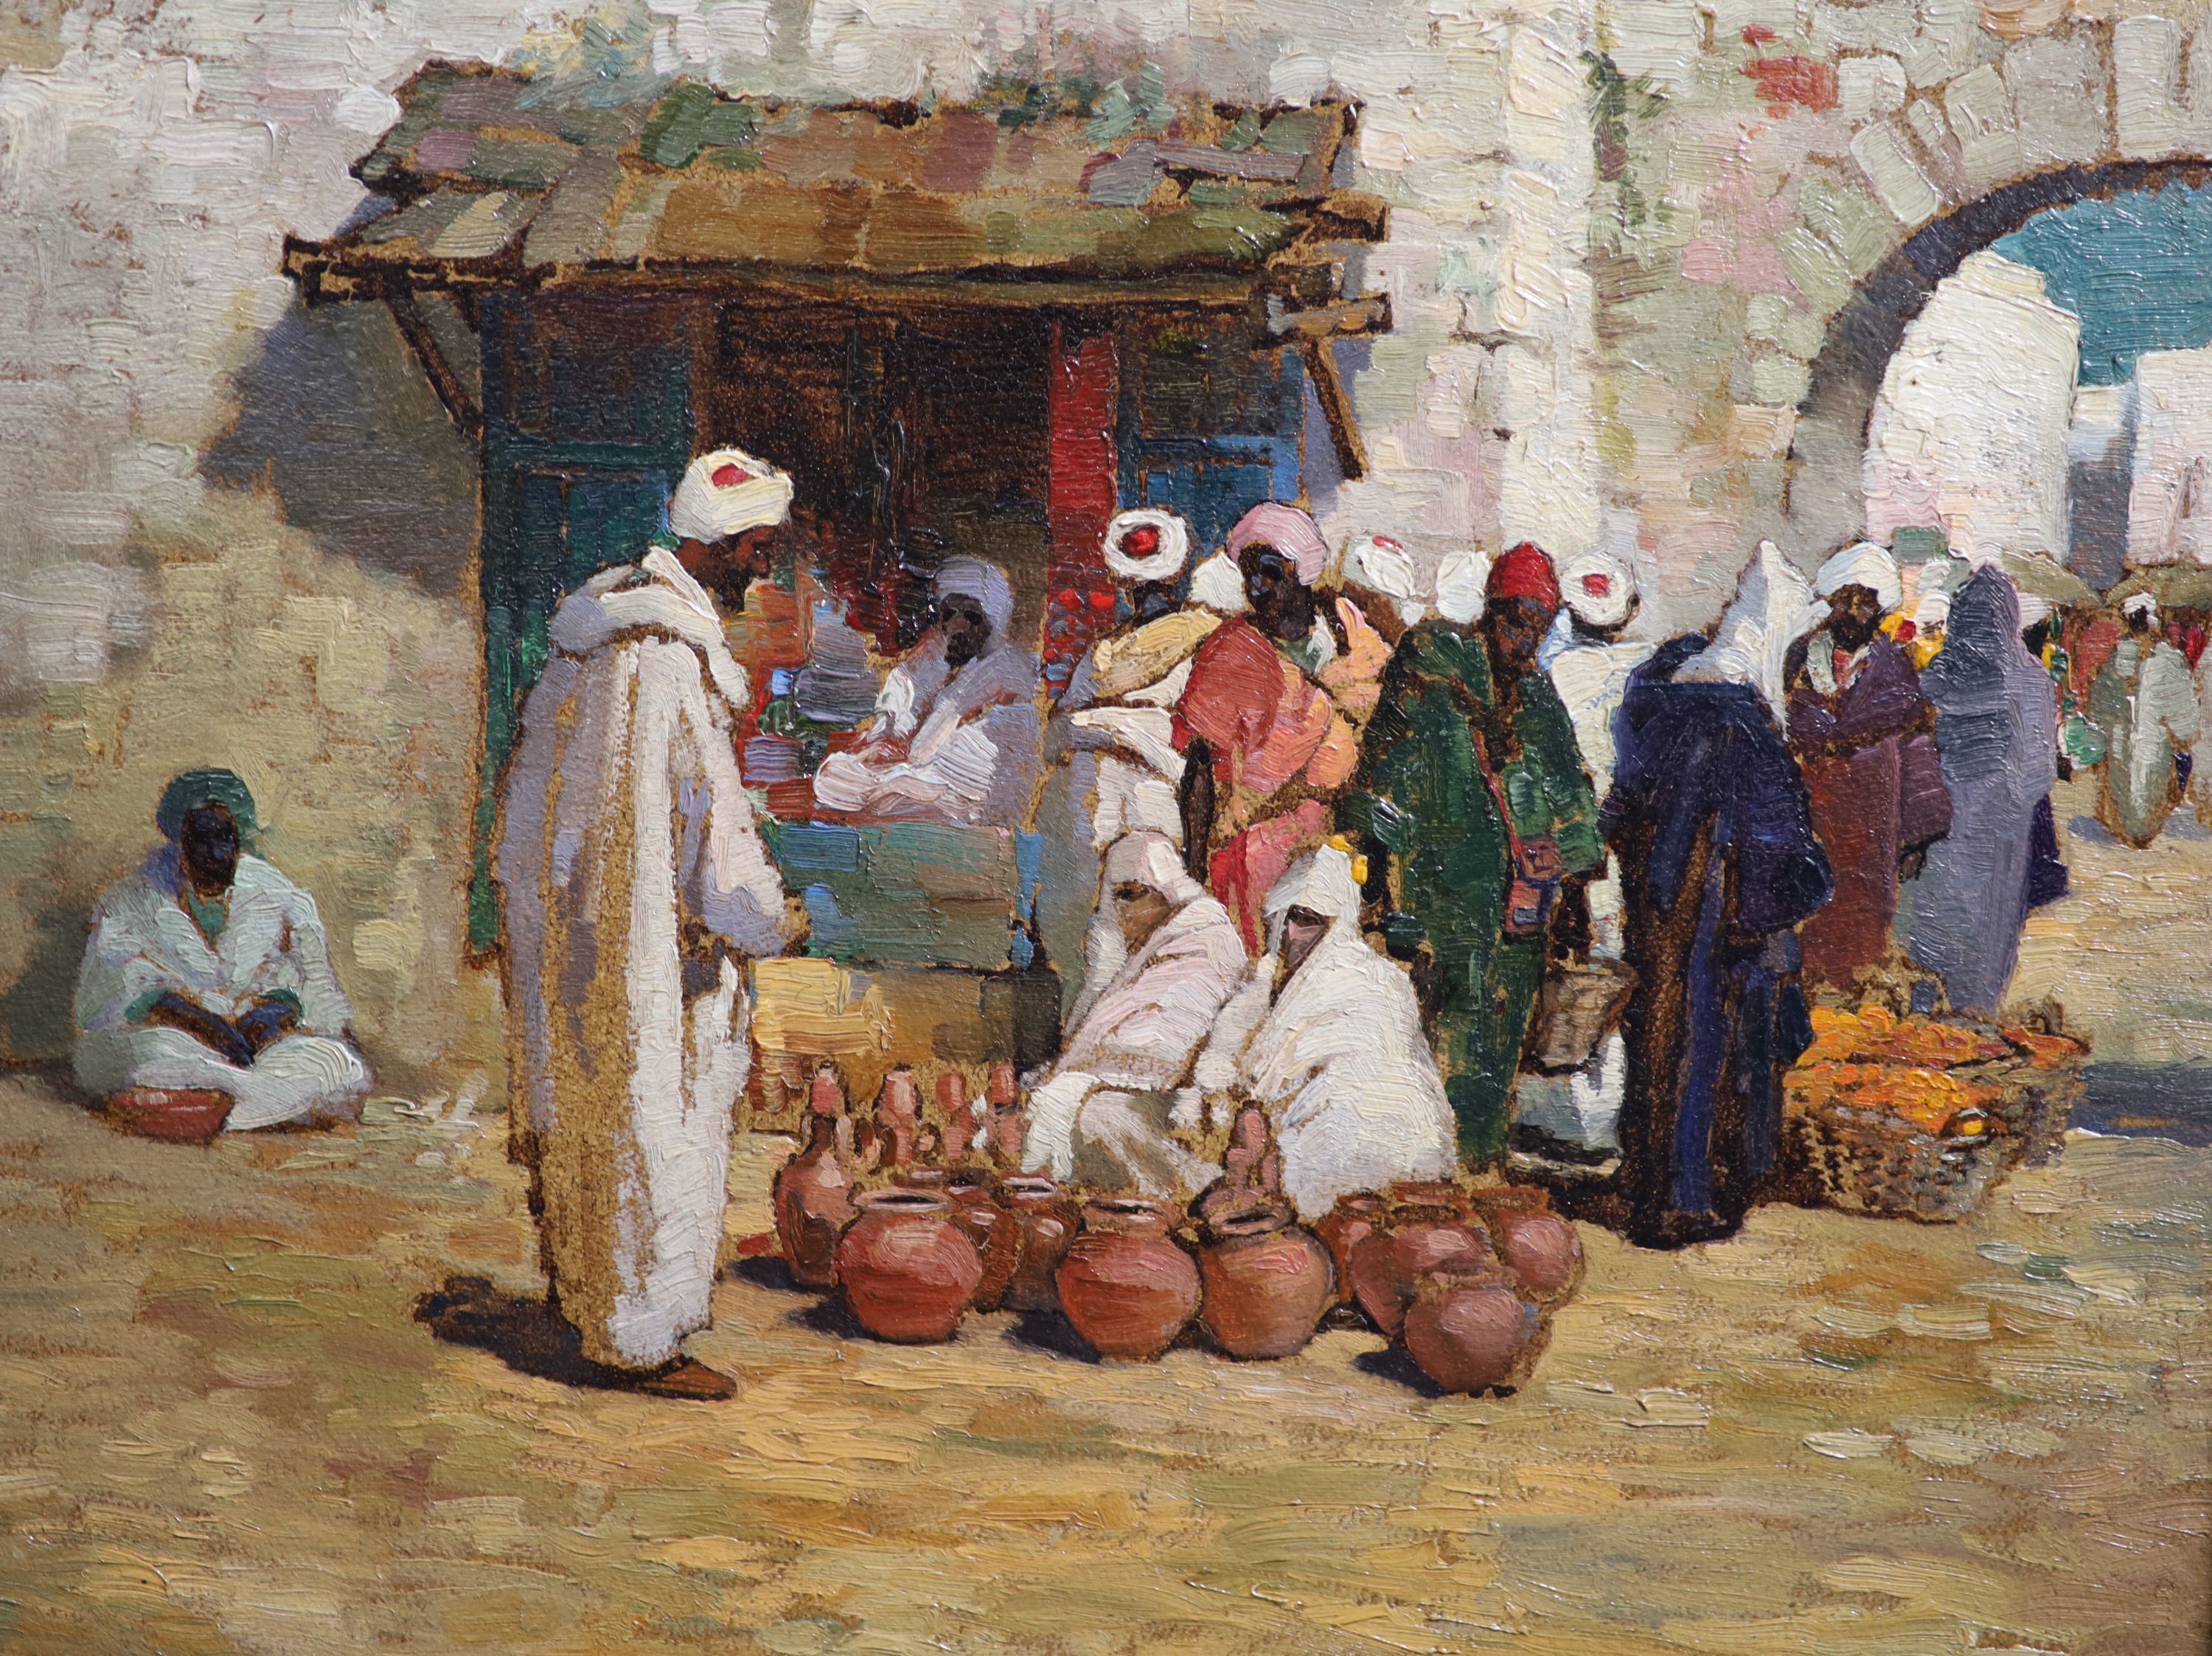 Robert E. Groves (1866-1944), North African market scene, oil on card, 24 x 29cm